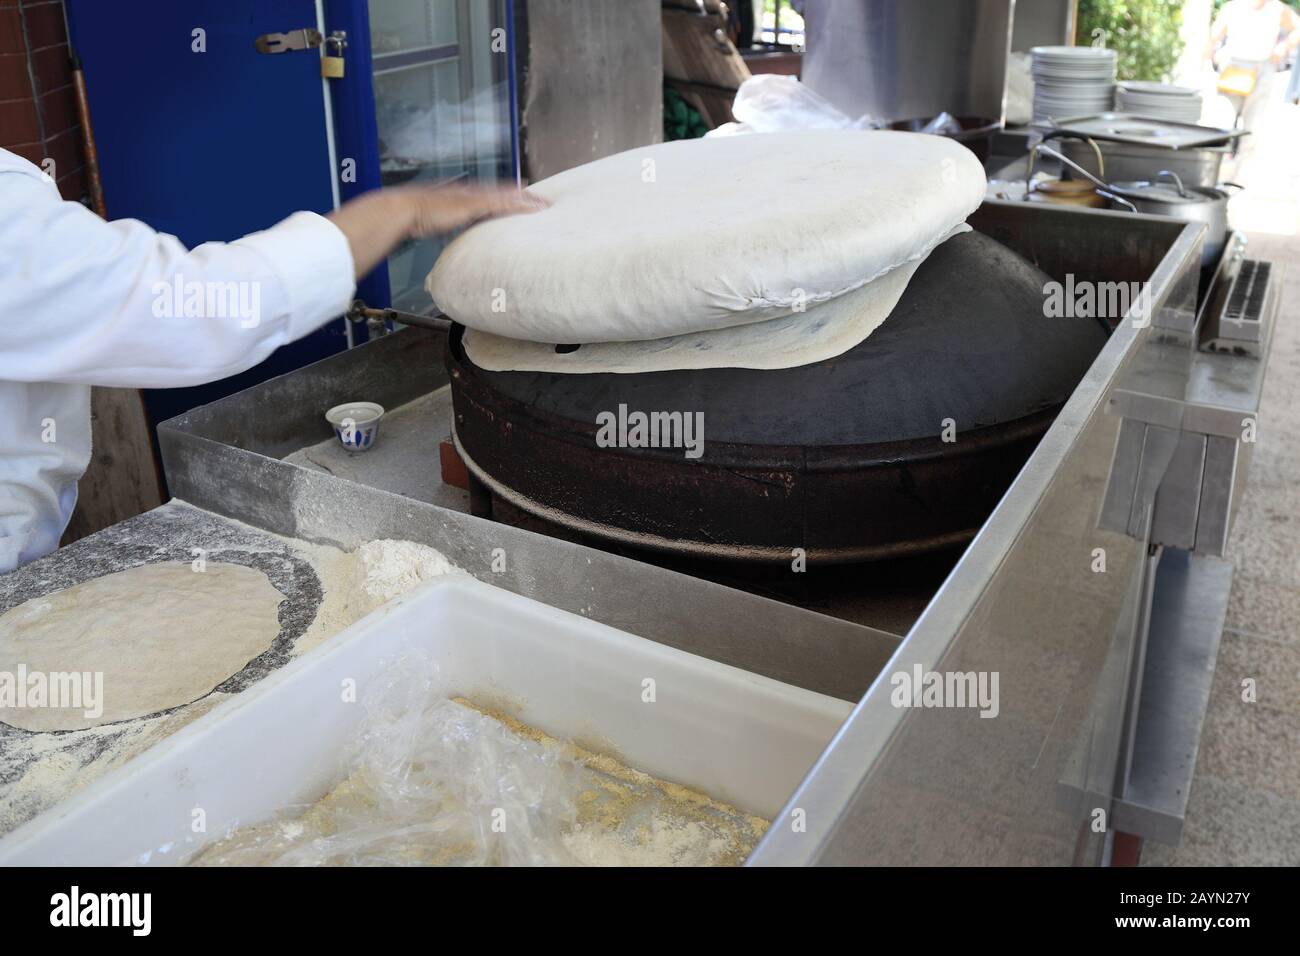 Libanesische Küche: Traditionelles Saj Fladenbrot wird auf dem umgedrehten  Ofen gebacken Stockfotografie - Alamy